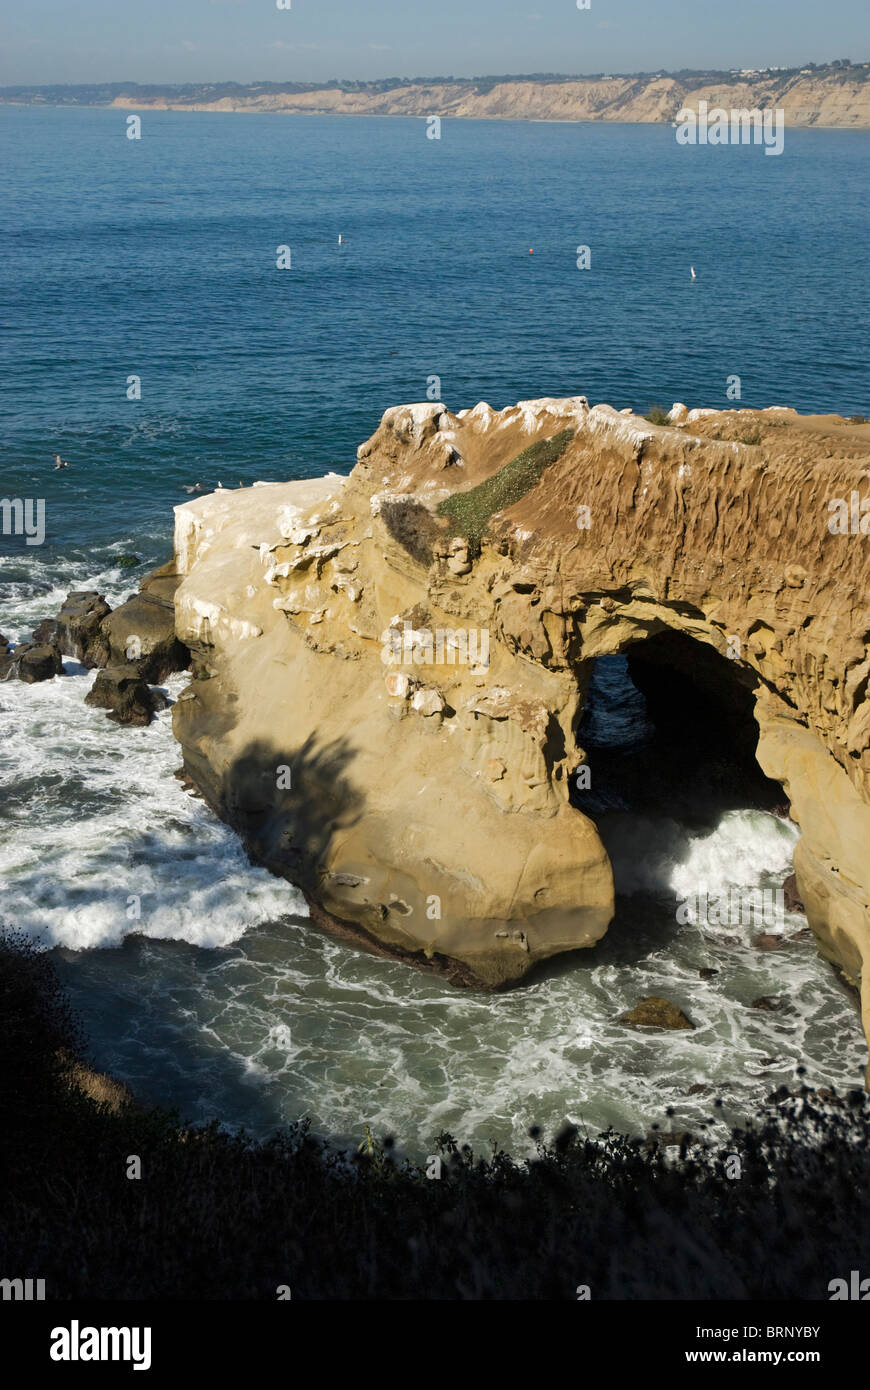 Una cueva marina, visto mirando sobre un acantilado en La Jolla, California, EE.UU. Foto de stock